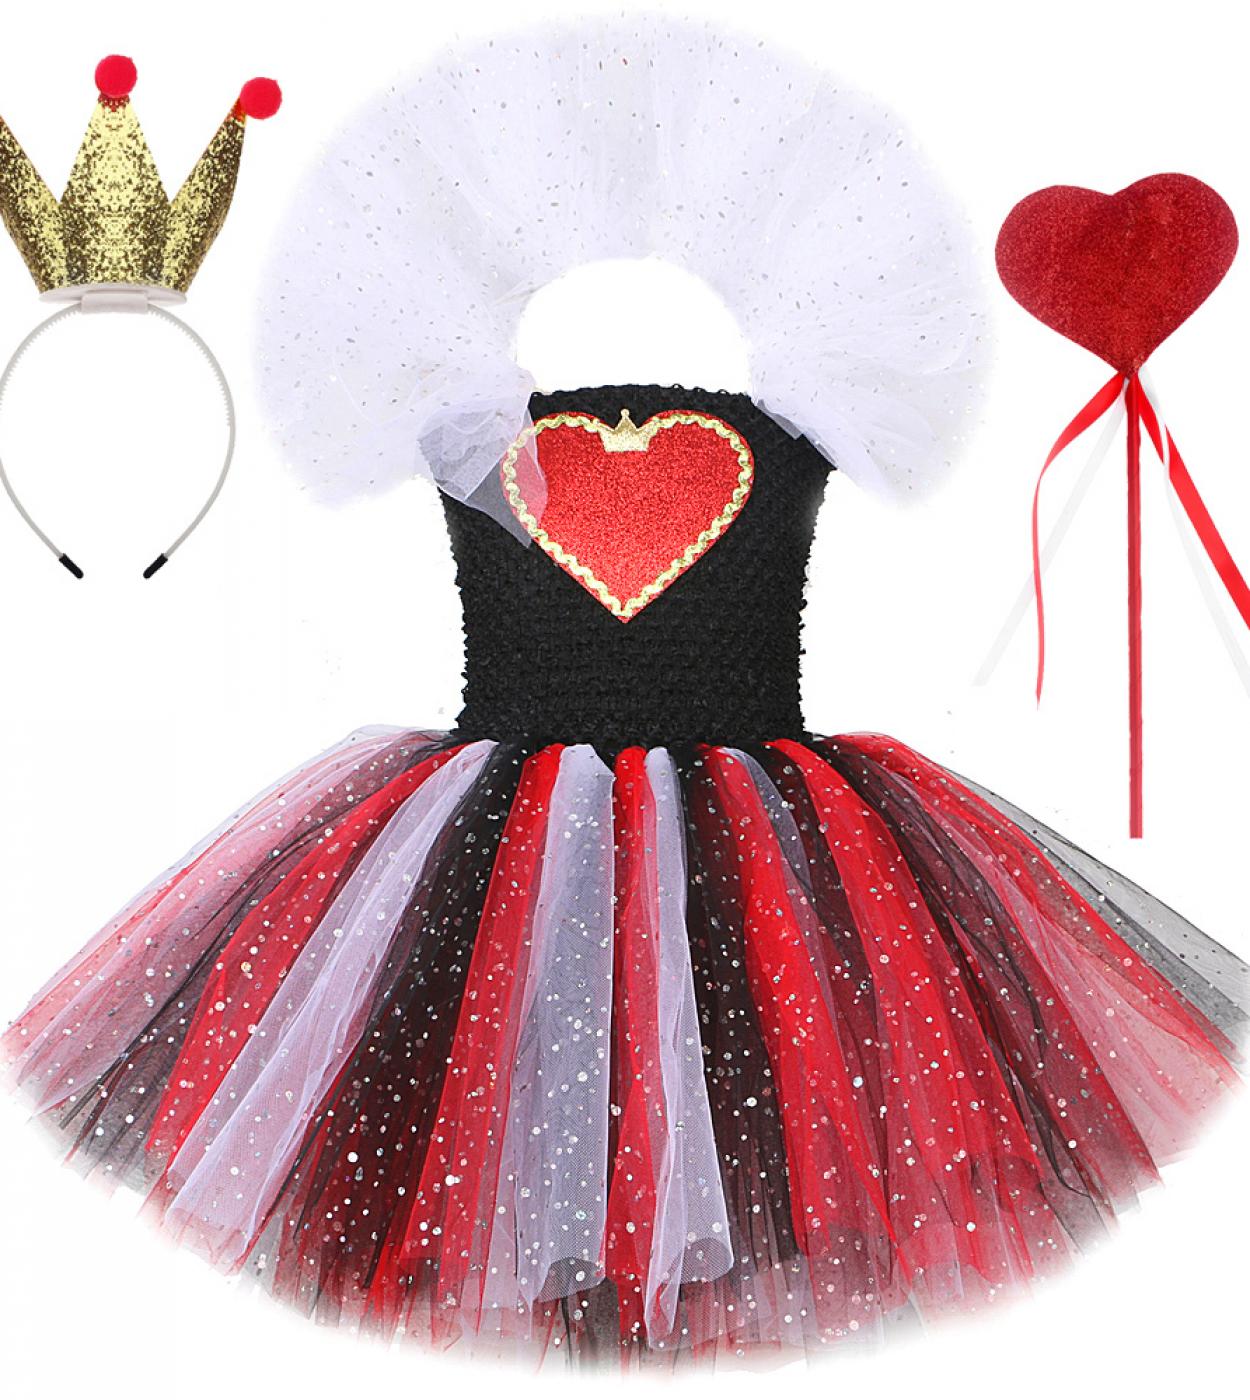 أزياء ملكة القلوب الحمراء المتلألئة للفتيات فستان توتو سباركلي للهالوين للأطفال فتاة ساحرة الشيطان مع تاج